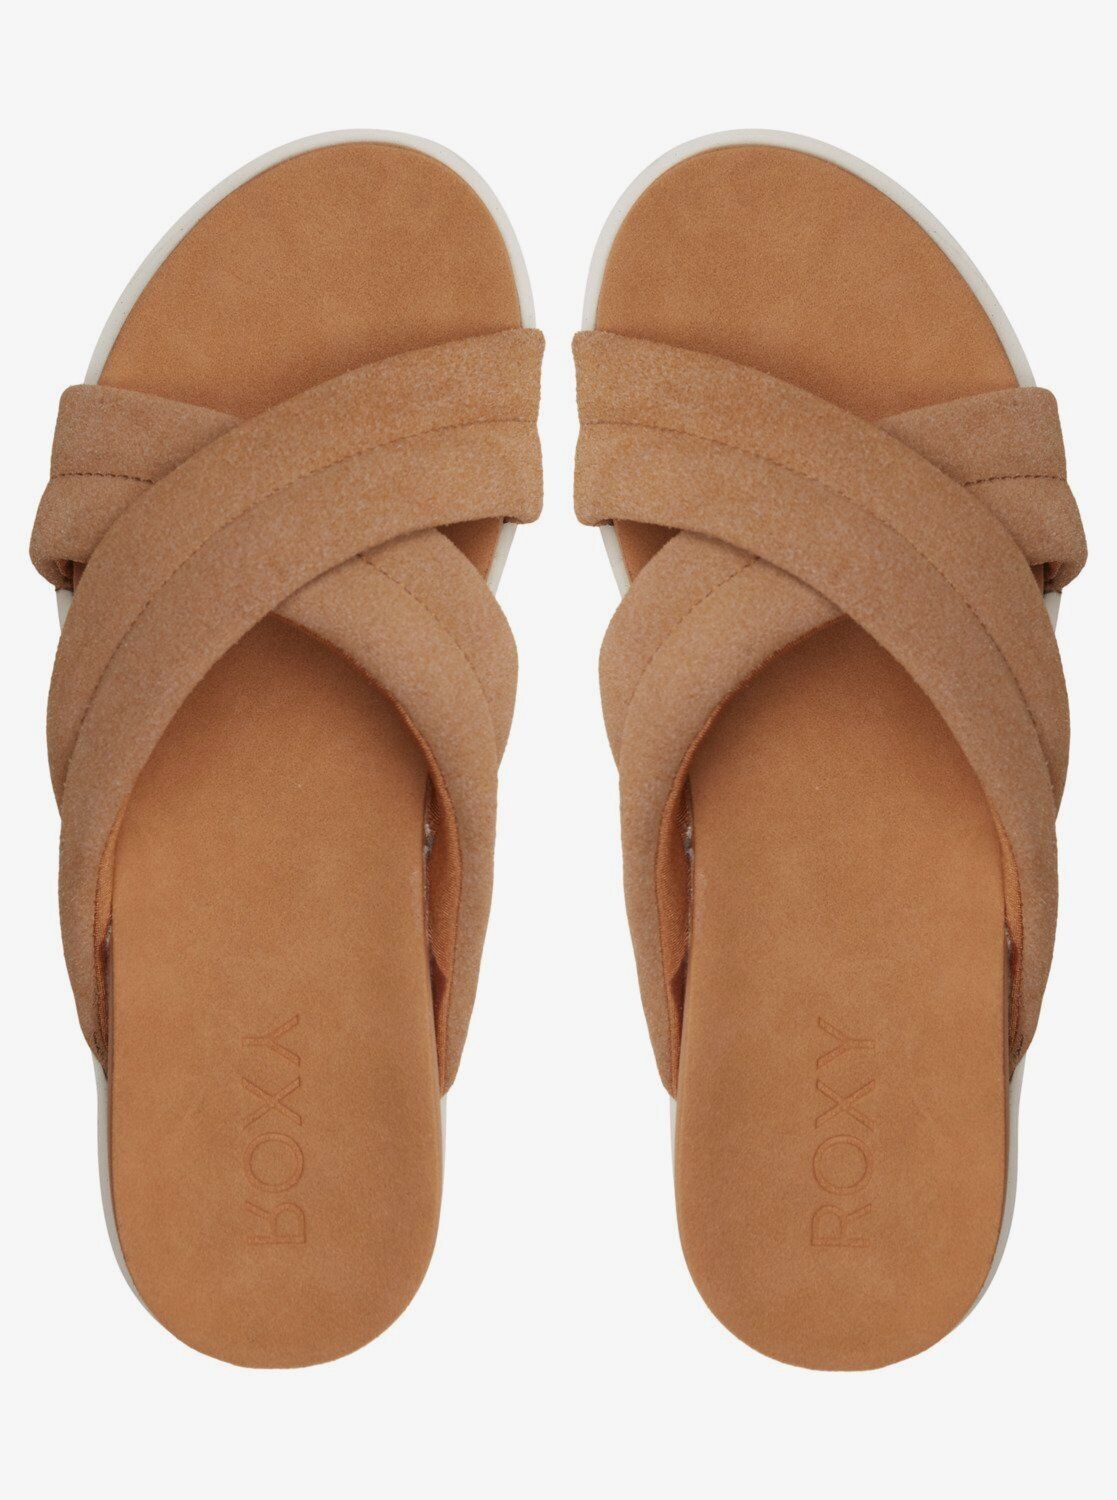 Roxy Veria Tan Platform Soft Suede Leather Lightweight Slip On Sandals